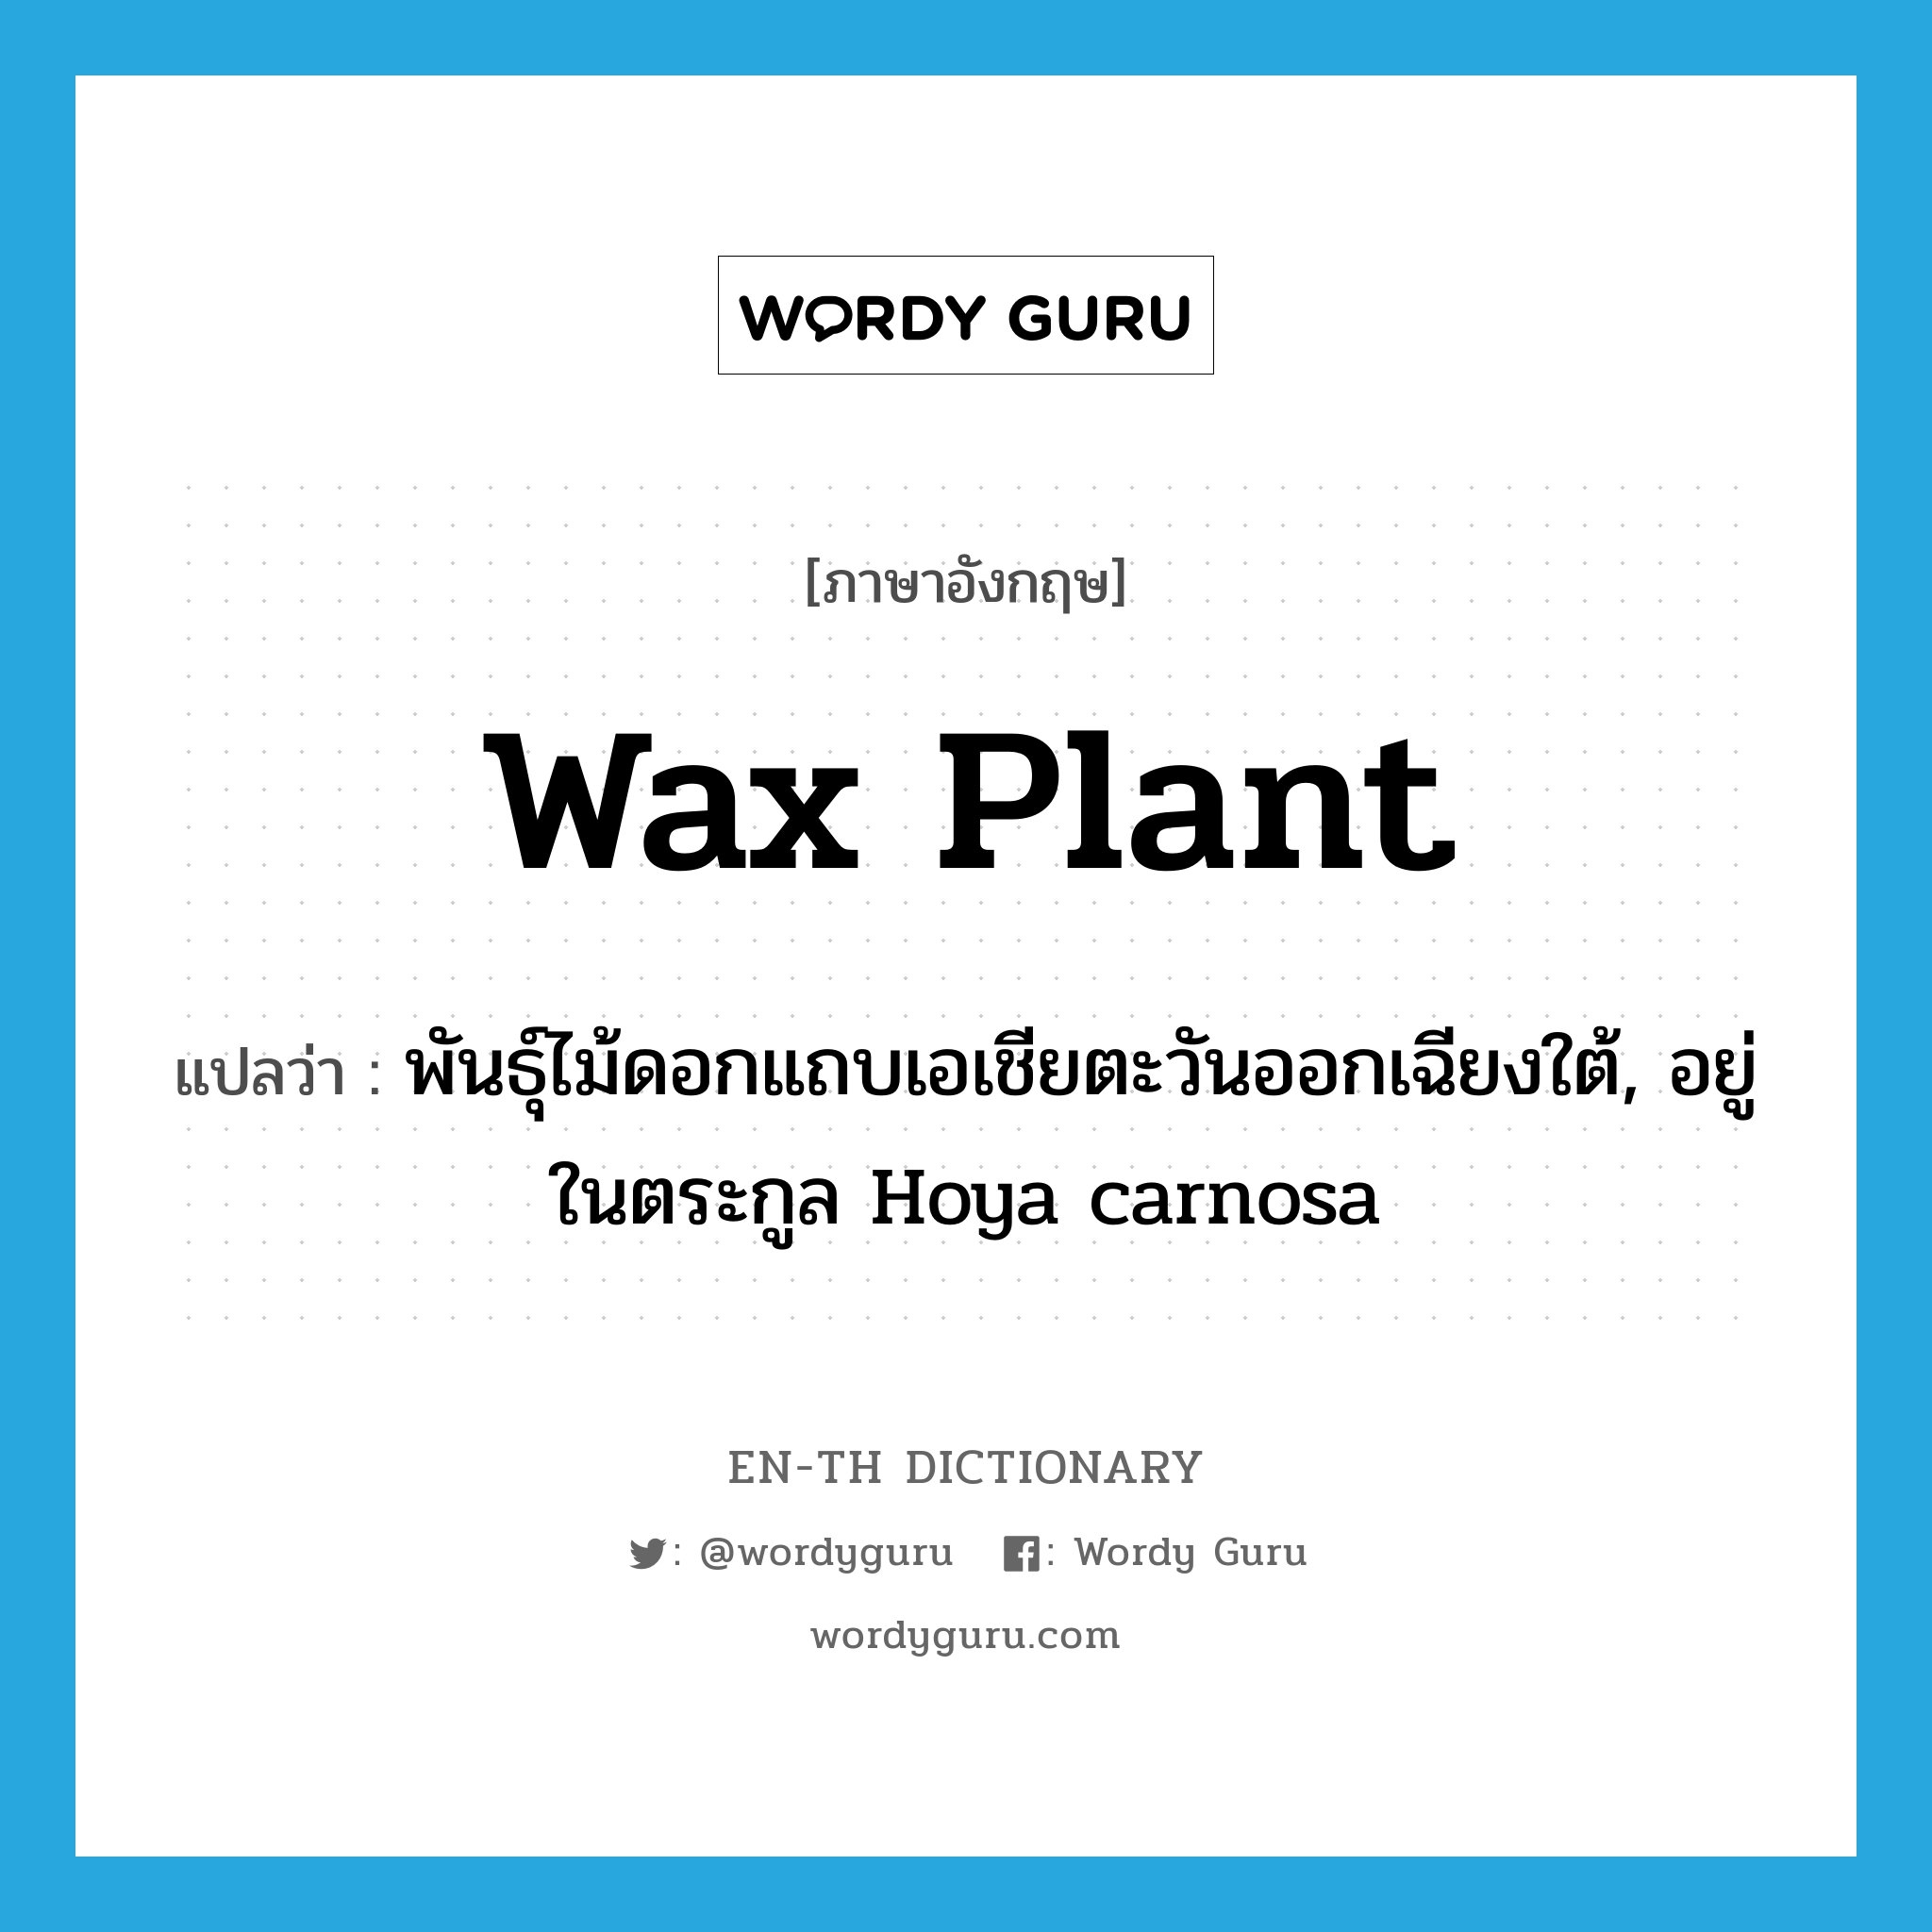 wax plant แปลว่า?, คำศัพท์ภาษาอังกฤษ wax plant แปลว่า พันธุ์ไม้ดอกแถบเอเชียตะวันออกเฉียงใต้, อยู่ในตระกูล Hoya carnosa ประเภท N หมวด N